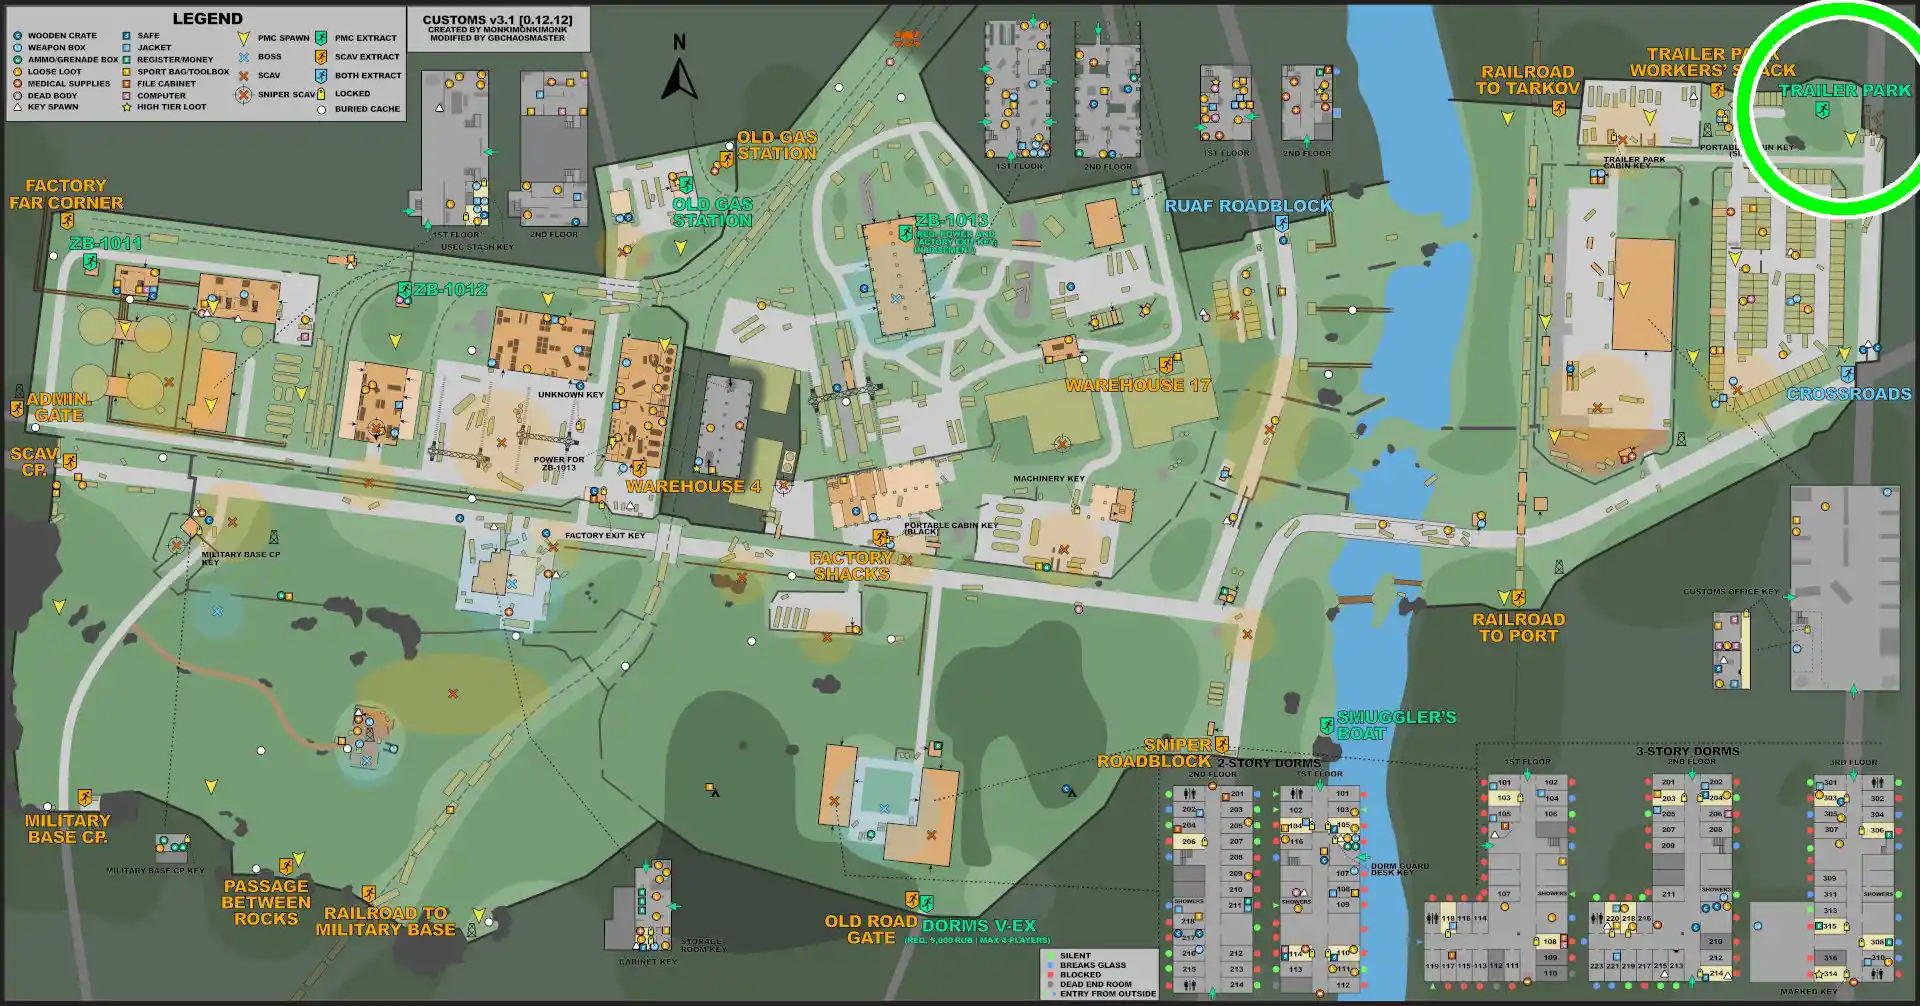 CUSTOMS-ESC-Trailer_Park-MAP.jpg